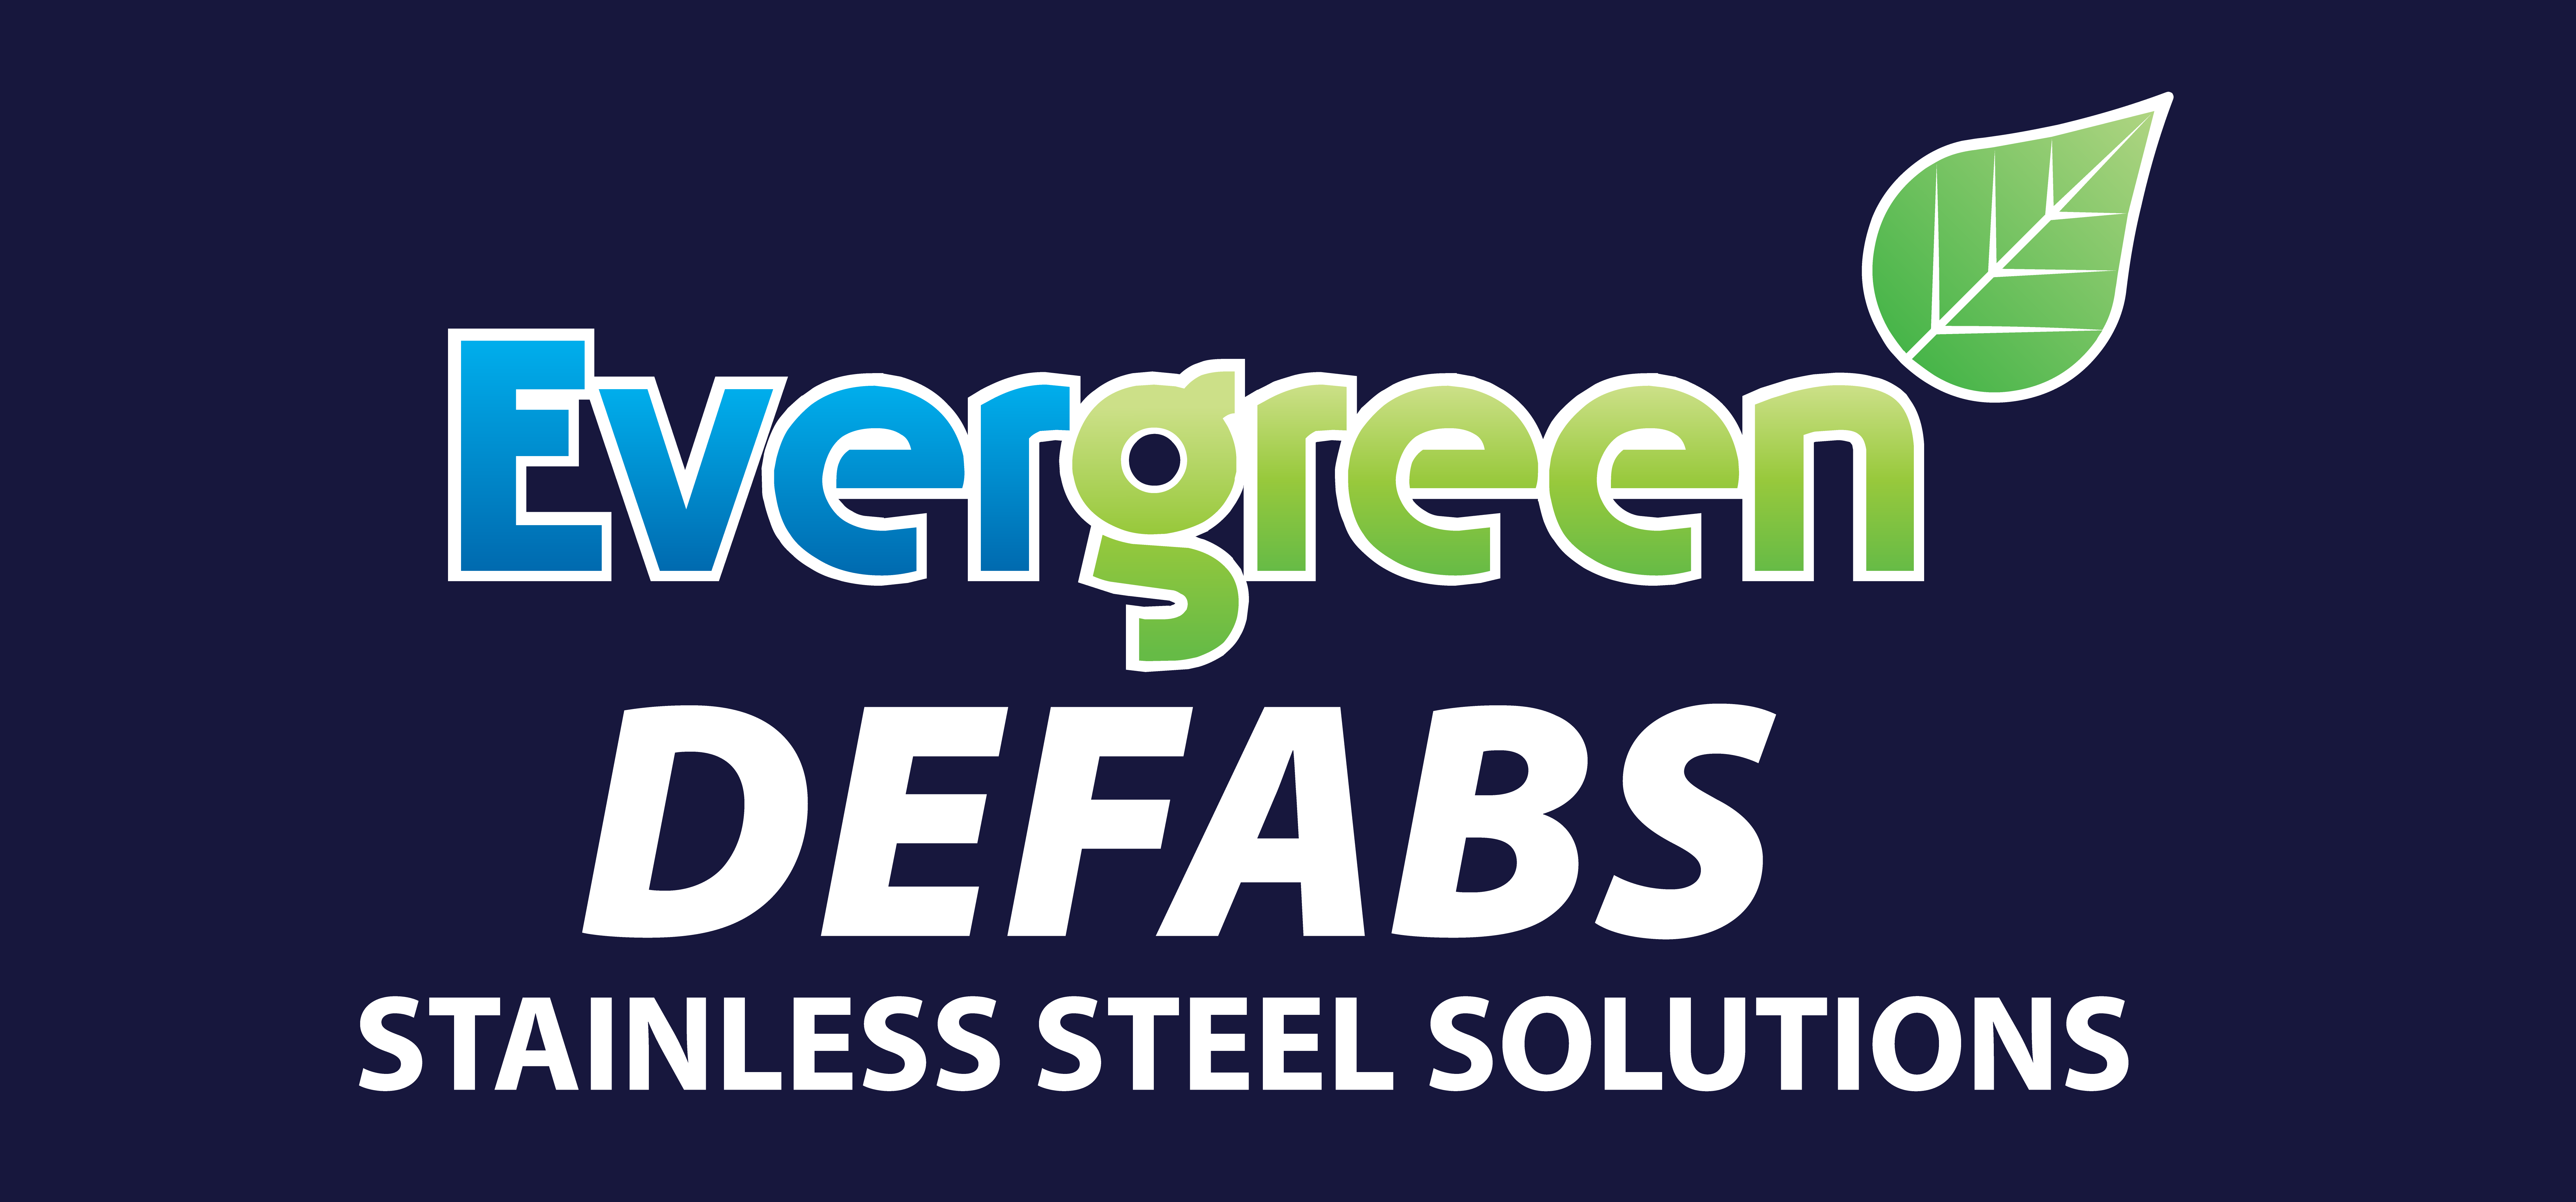 Evergreen Defabs